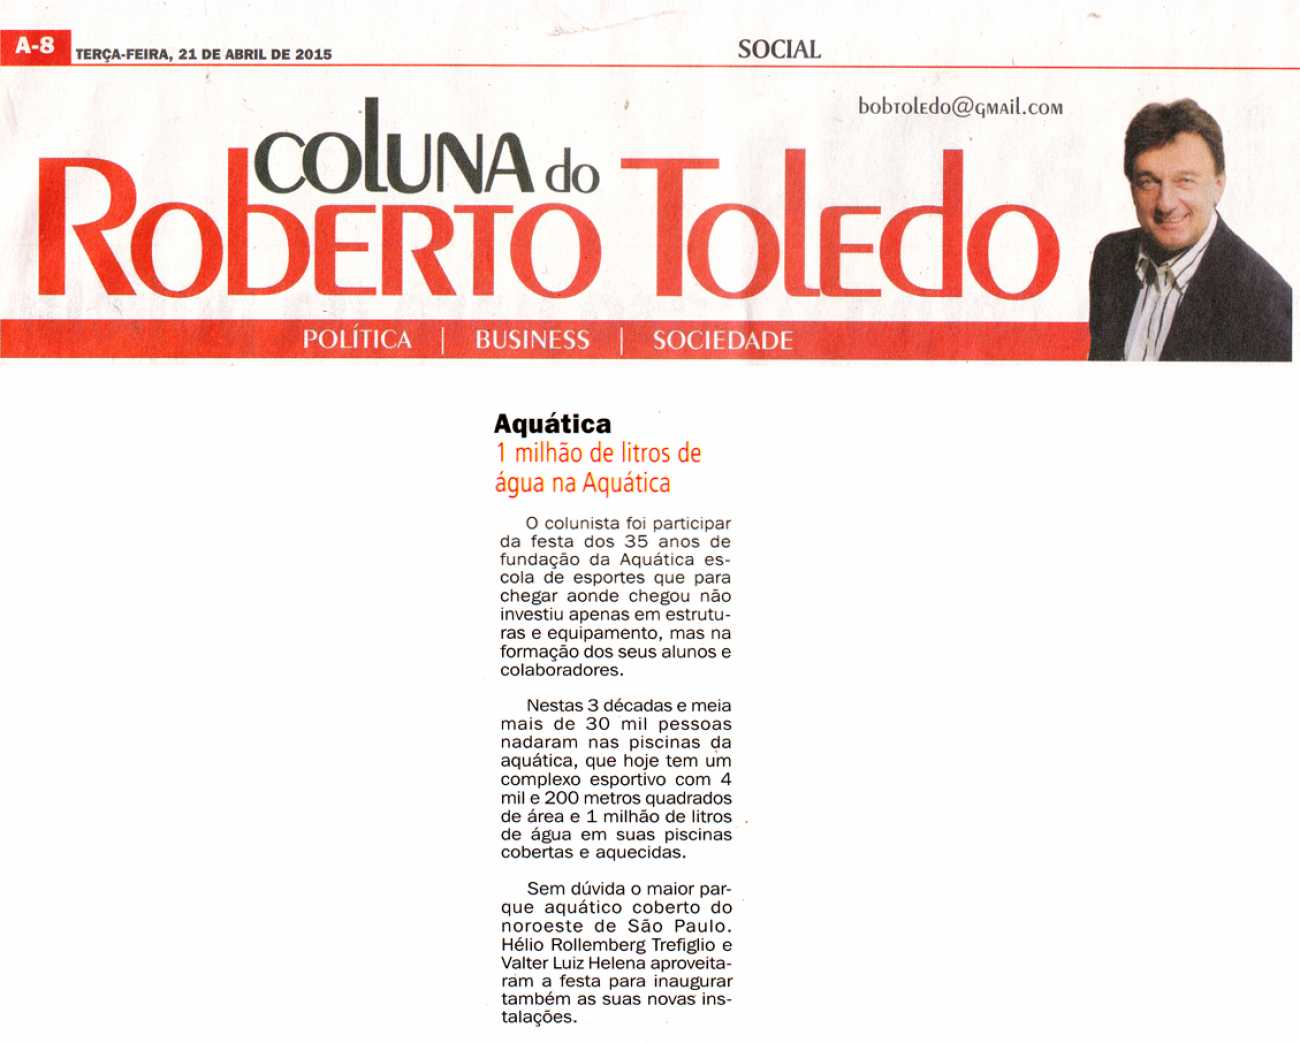 1 milhão de litros de água na Aquática Coluna Social Roberto Toledo Dhoje - 26/03/2015